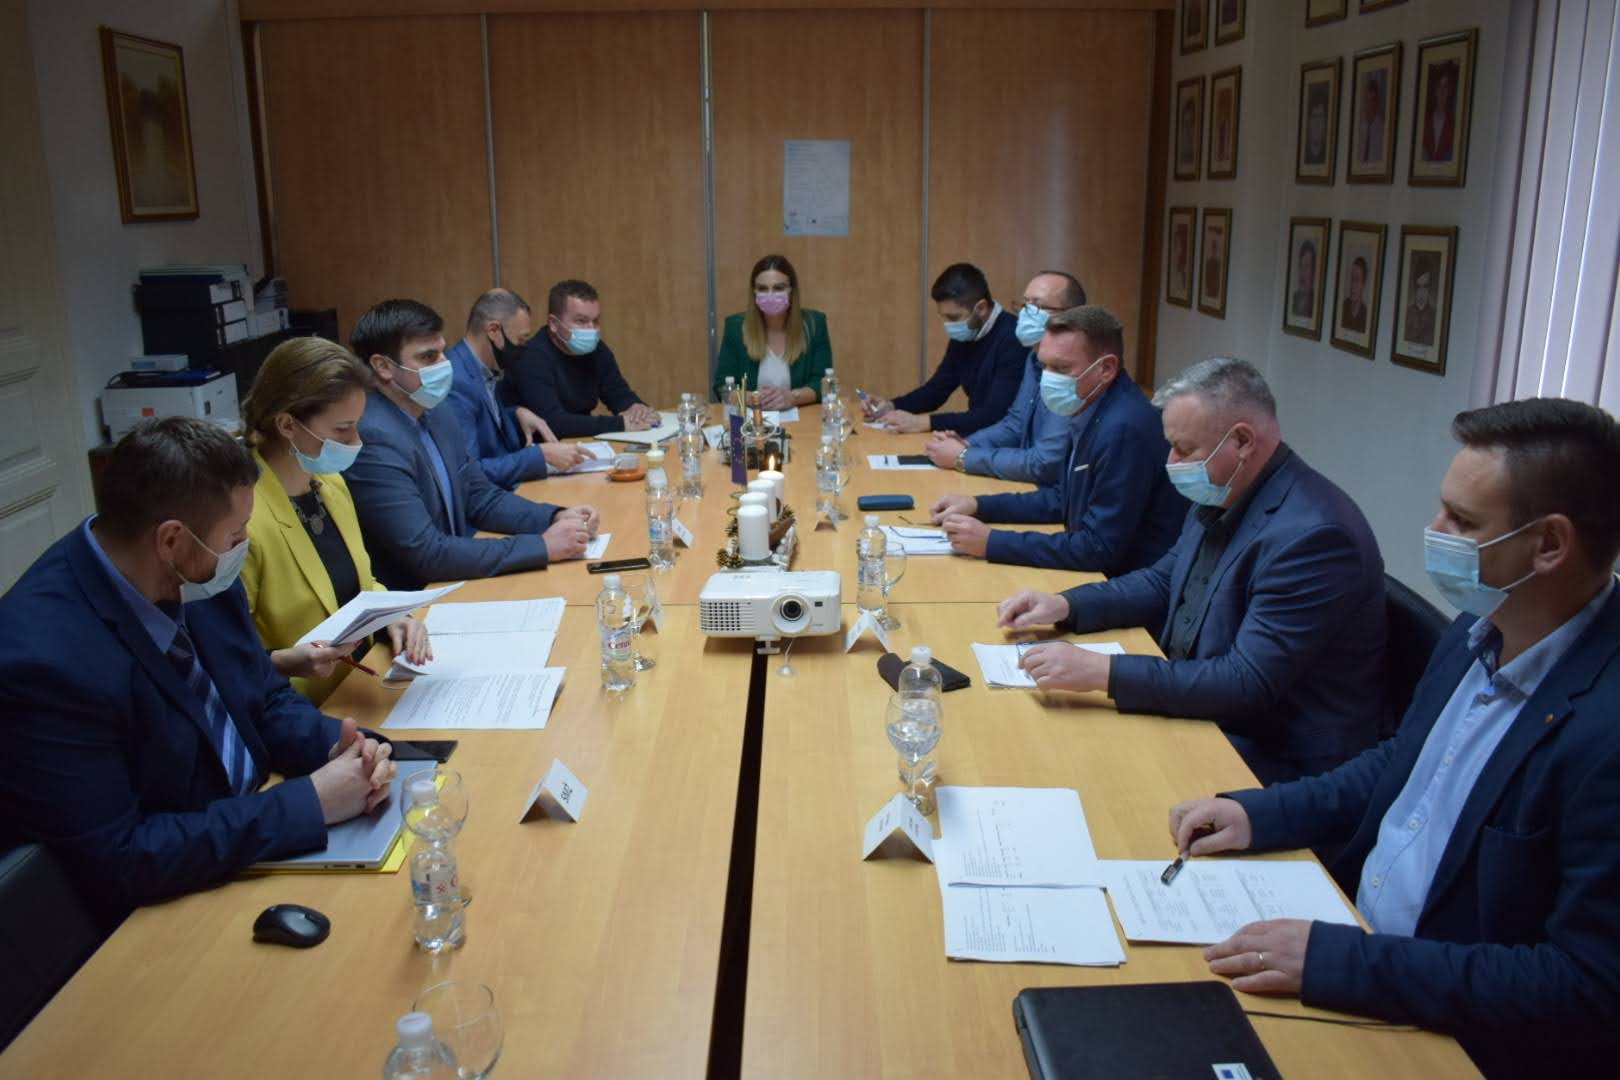 Župan Sisačko-moslavačke županije Ivan Celjak sudjelovao je na radnom sastanku u Općini Lekenik, s načelnikom Ivicom Perovićem i suradnicima.